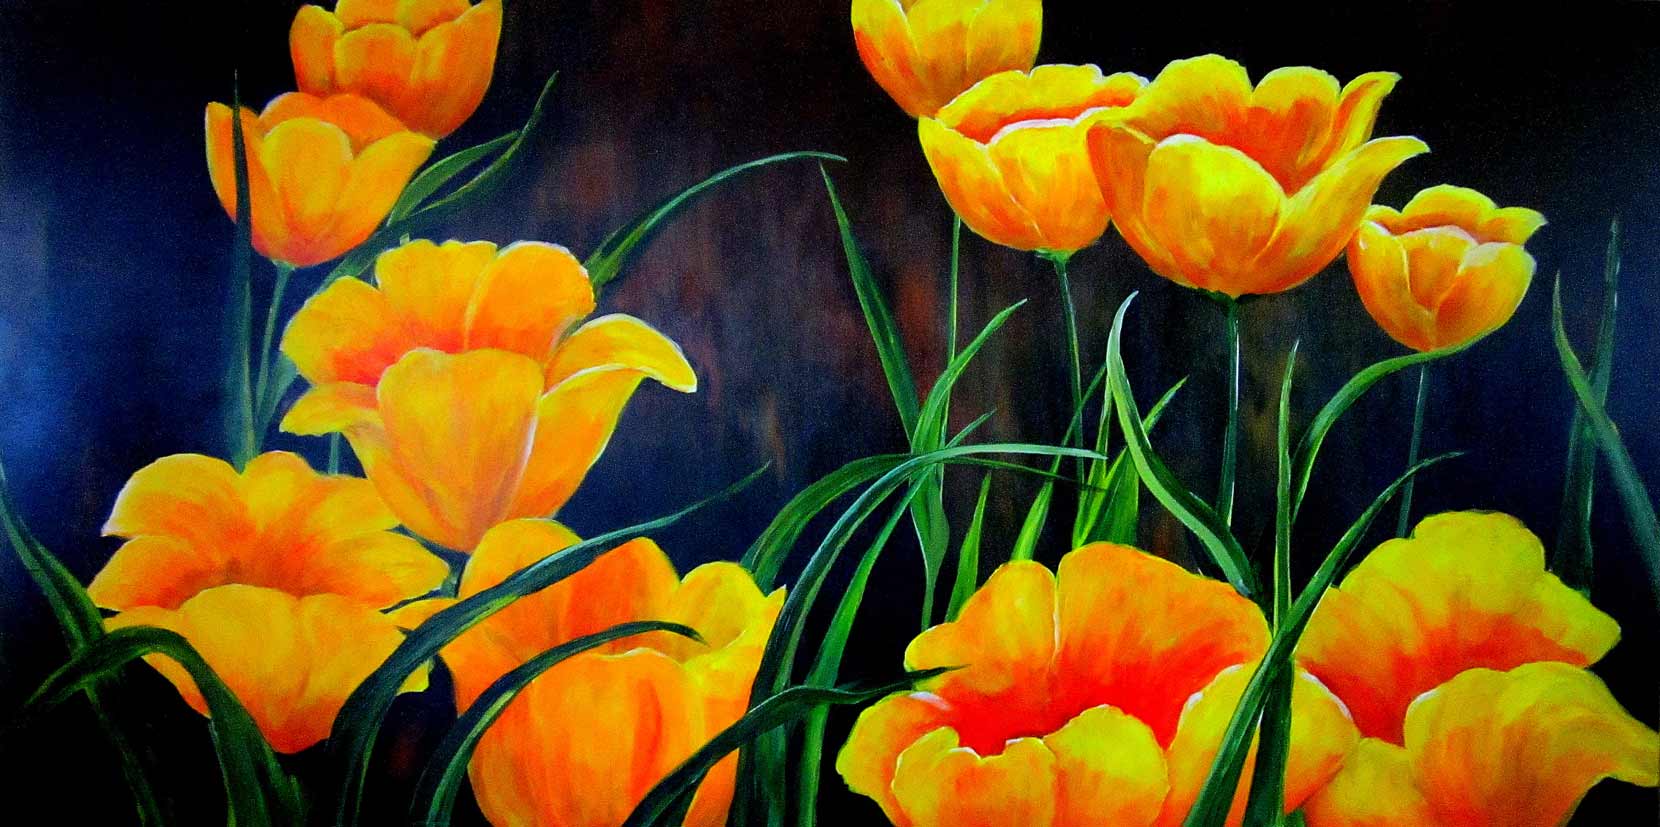 "Tulips", 48x24